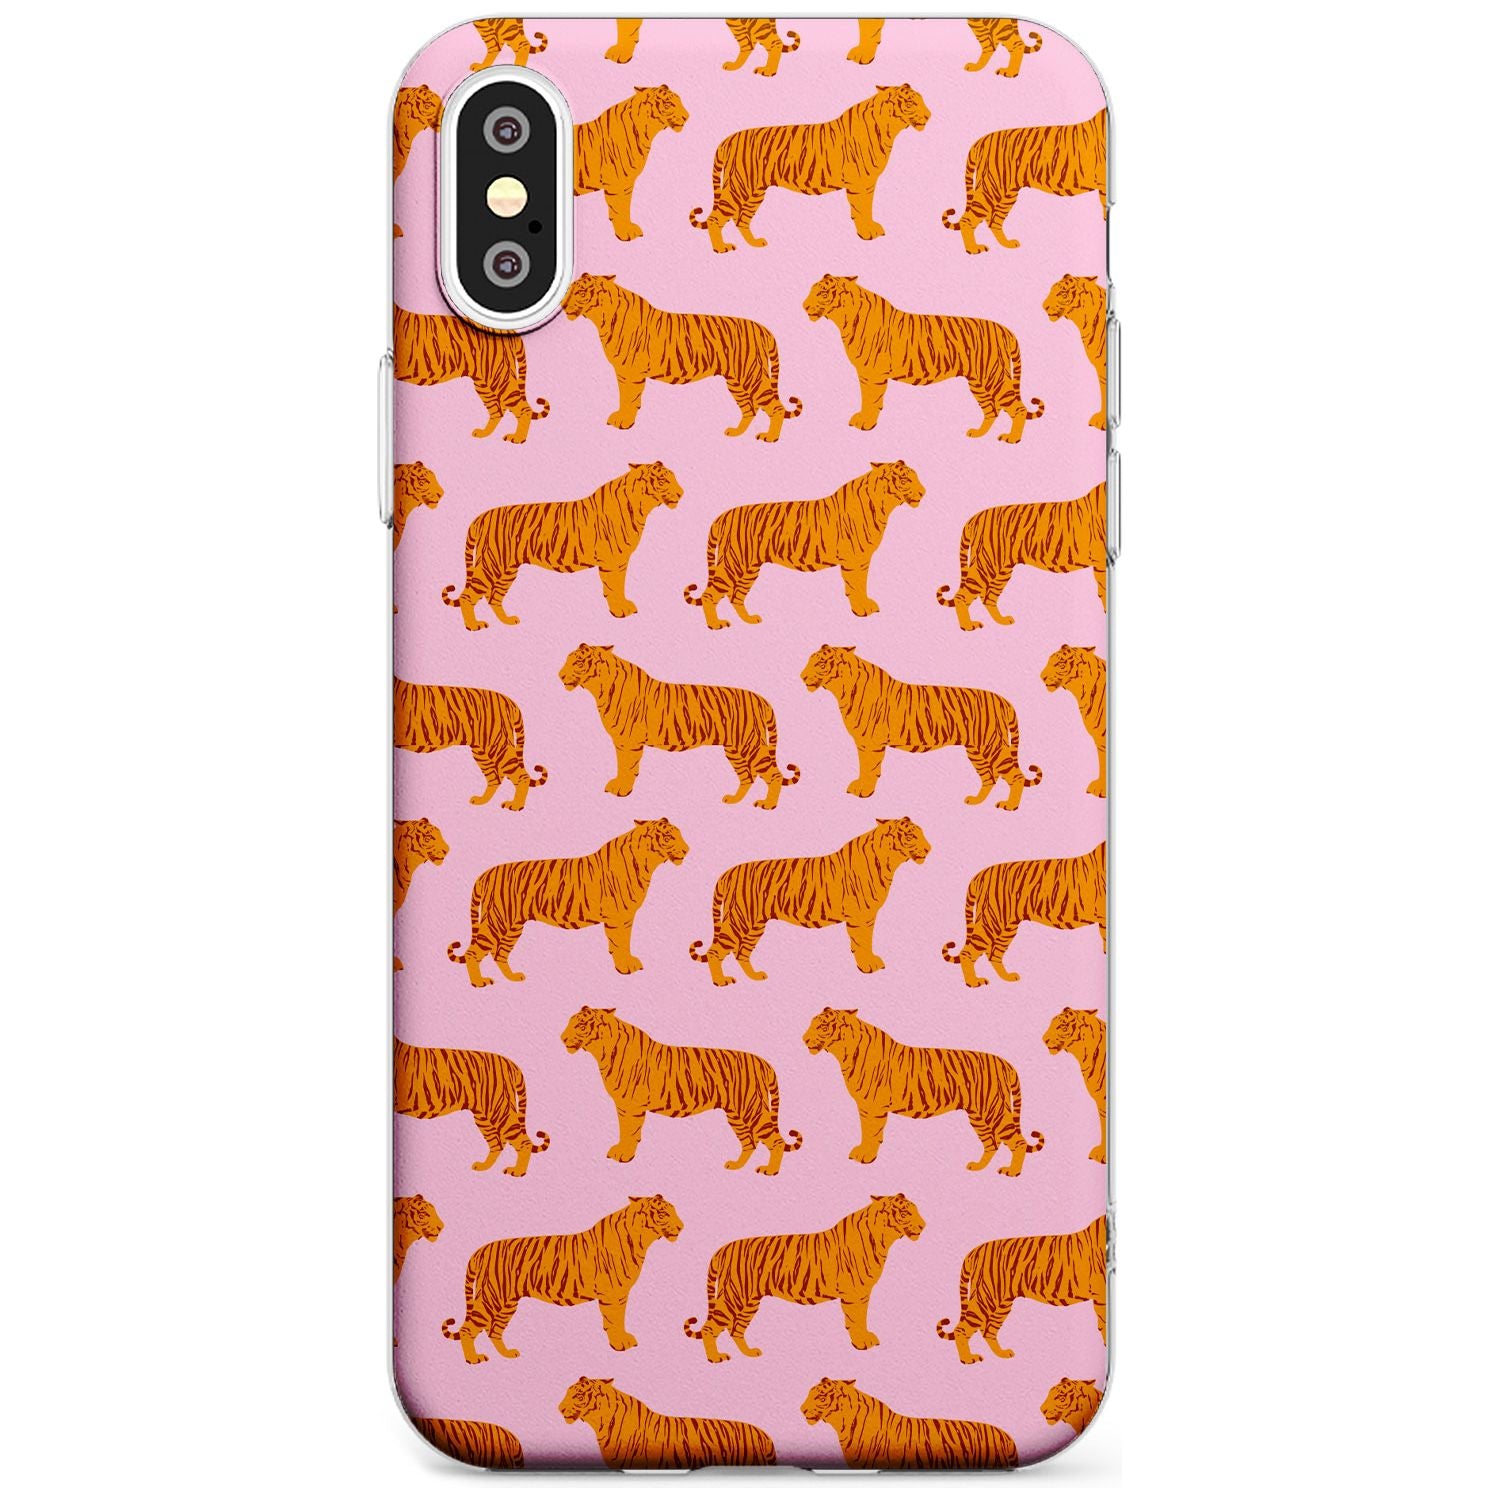 Tigers on Pink Pattern Slim TPU Phone Case Warehouse X XS Max XR